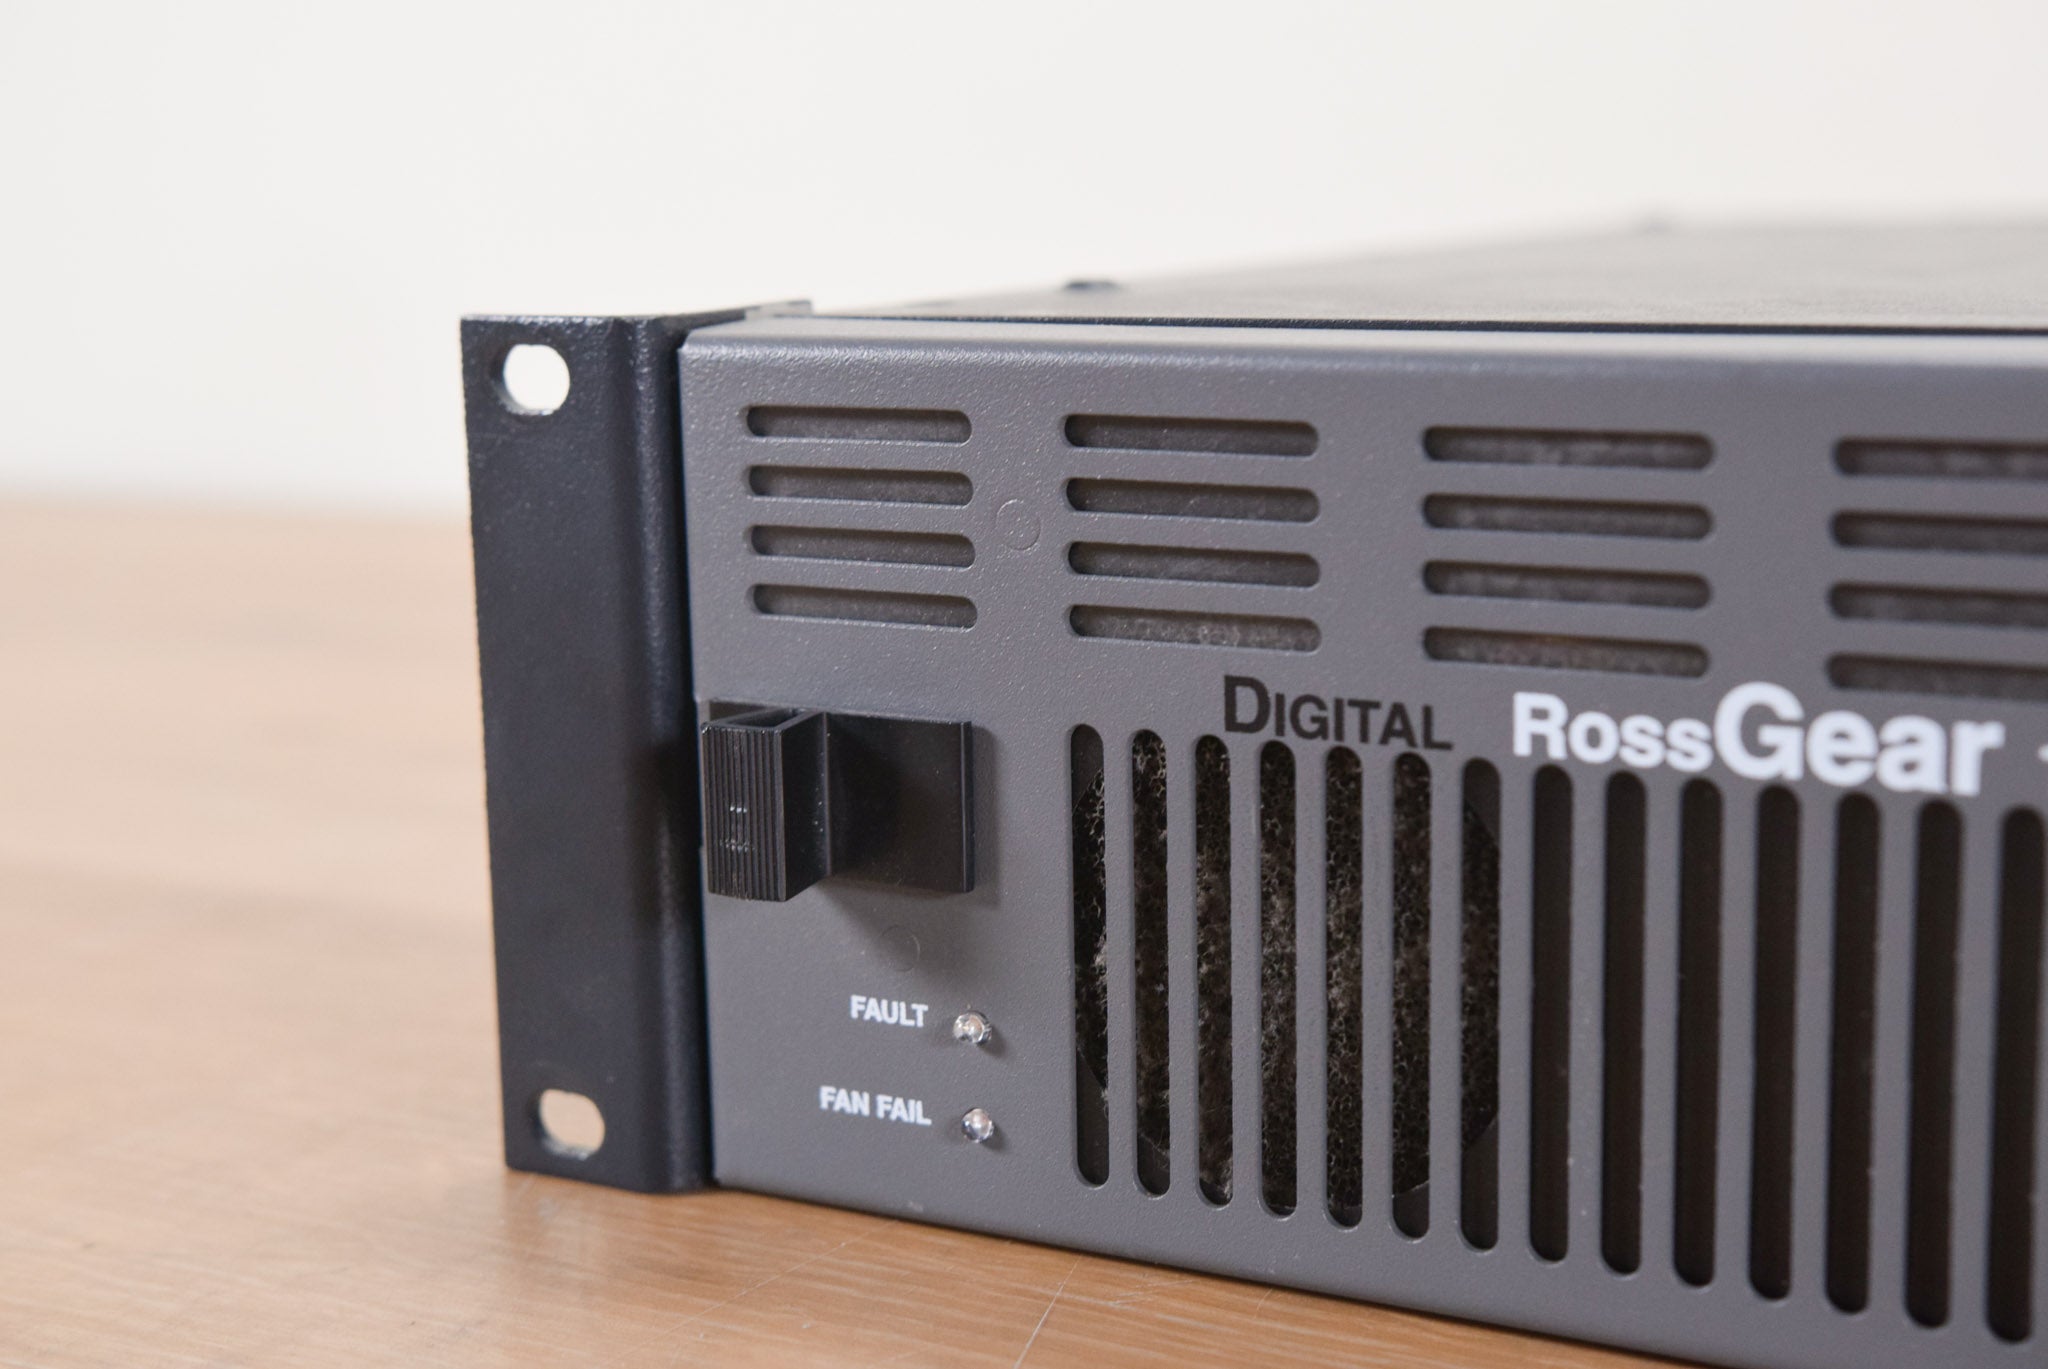 Ross DFR-8110A Digital RossGEAR Terminal